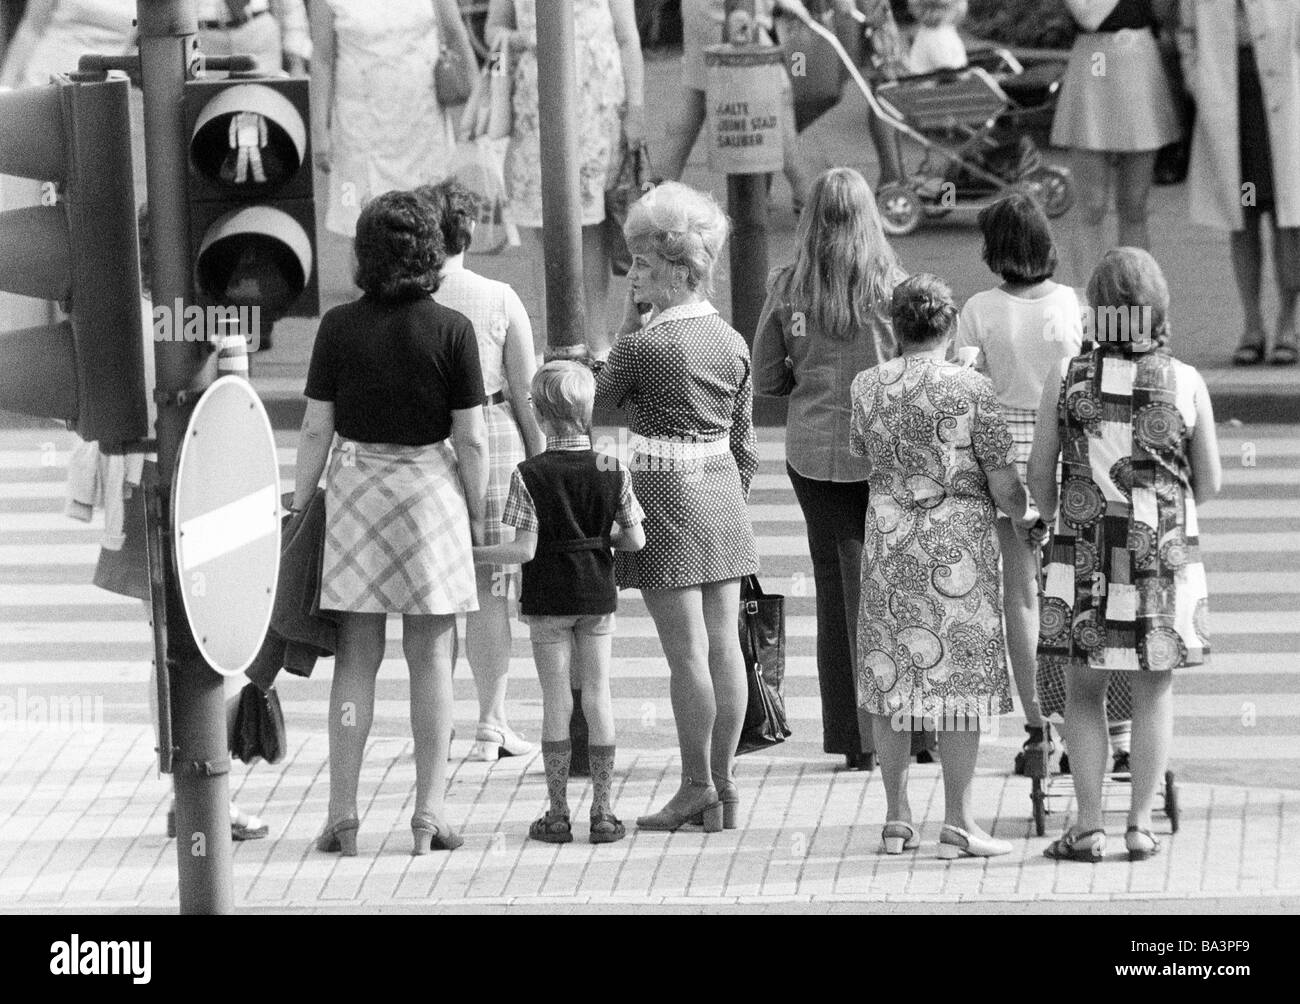 70er Jahre Schwarz Weiss Foto Menschen Auf Einkaufsbummel Mehrere Frauen Und Einen Jungen Warten An Einer Ampel Zebrastreifen Stockfotografie Alamy